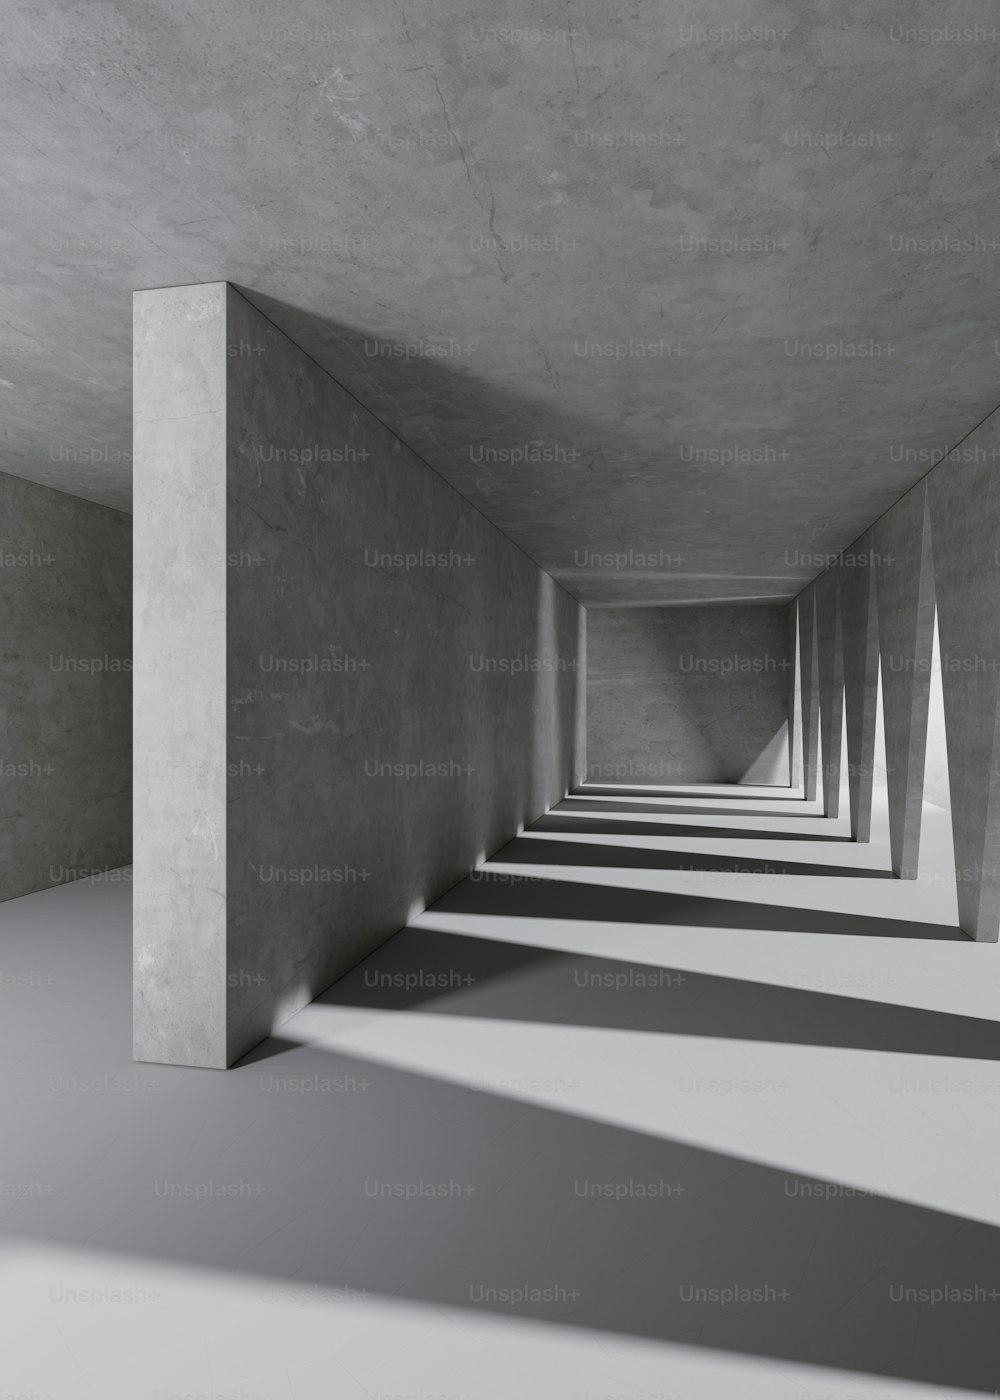 uma longa fileira de pilares de concreto em uma sala